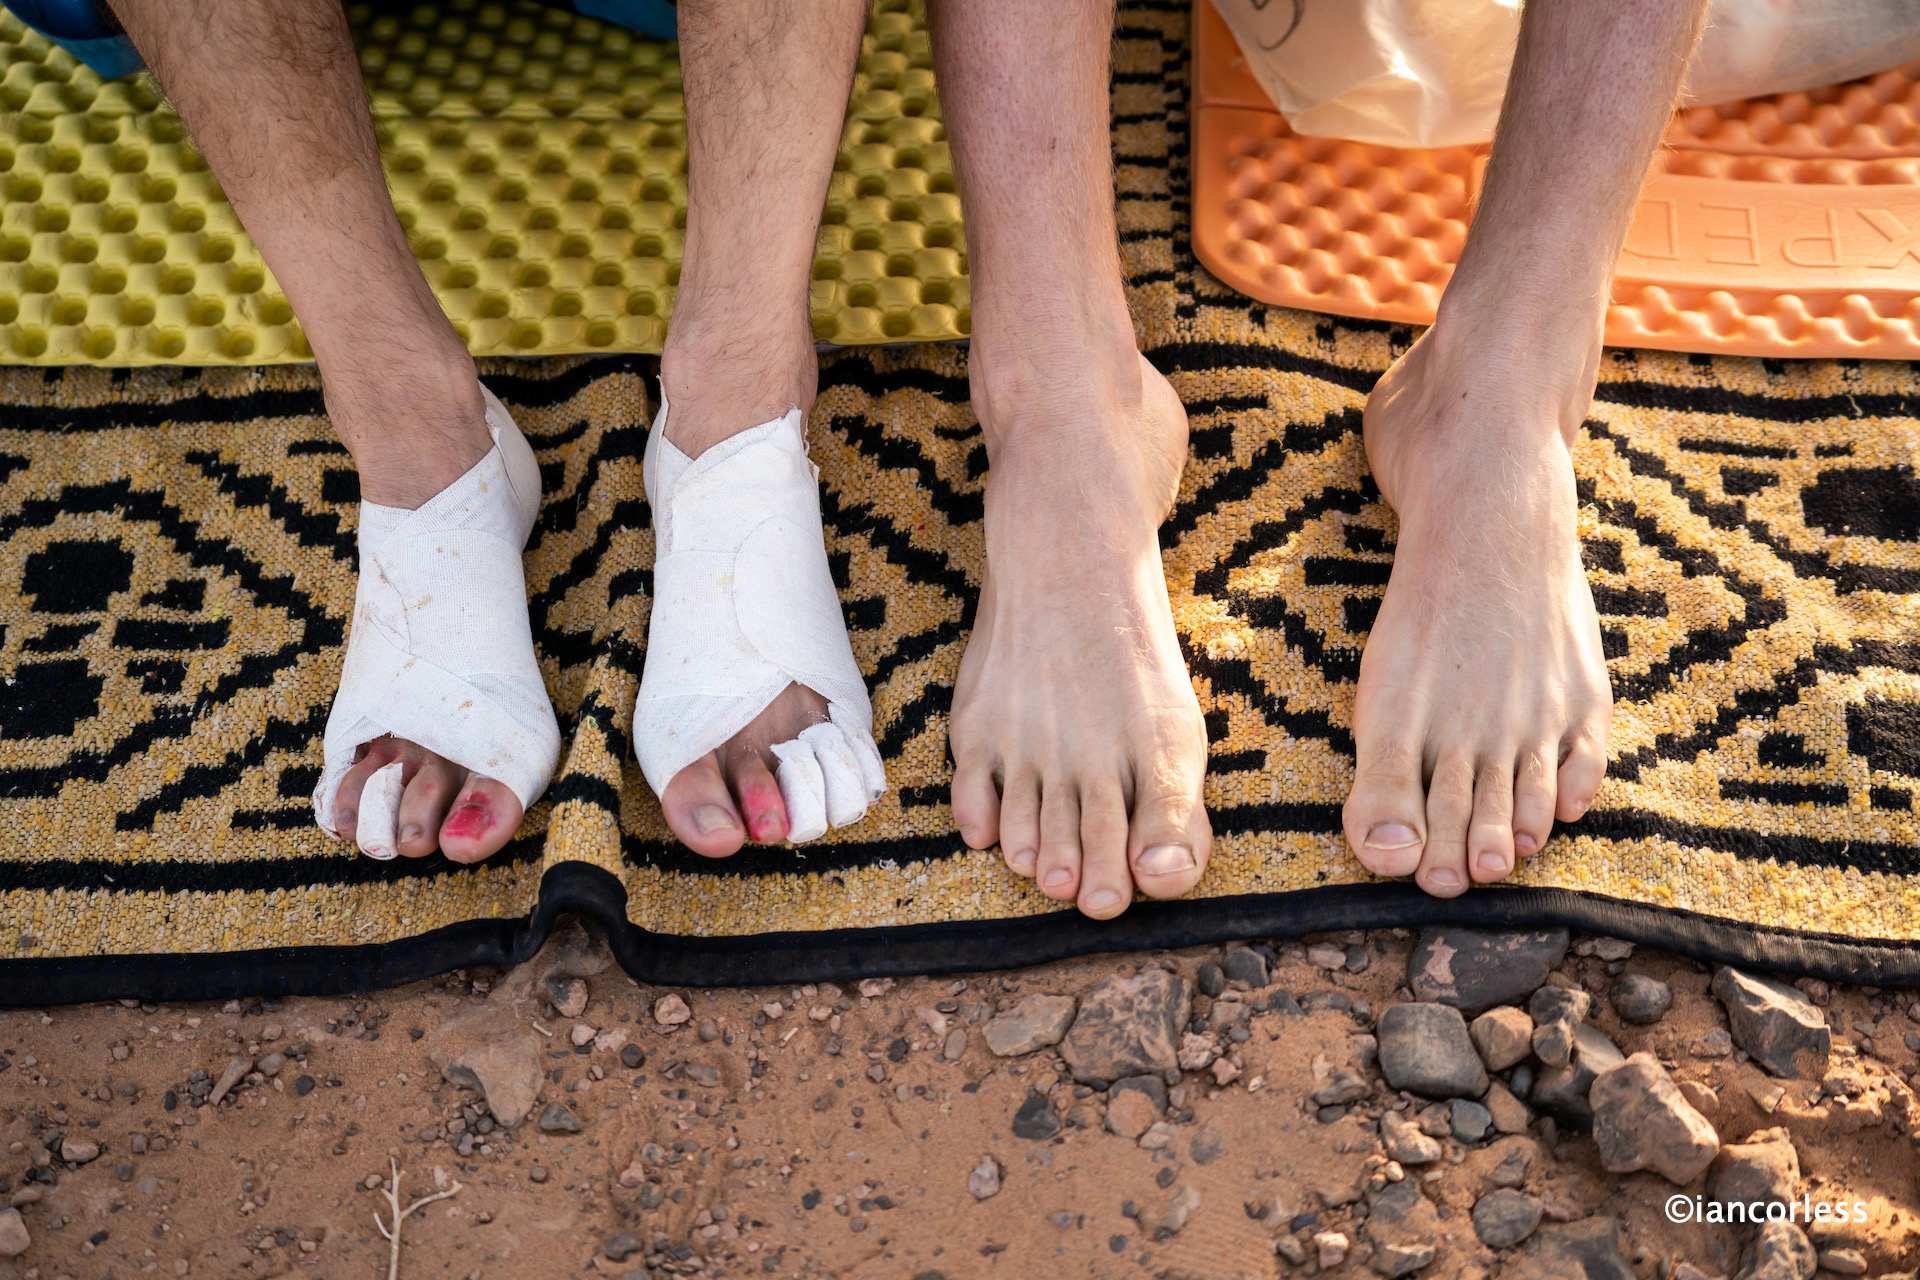 How to Put on ArmaSkin Anti-Blister Toe Socks - Blister Prevention for  Hiking 